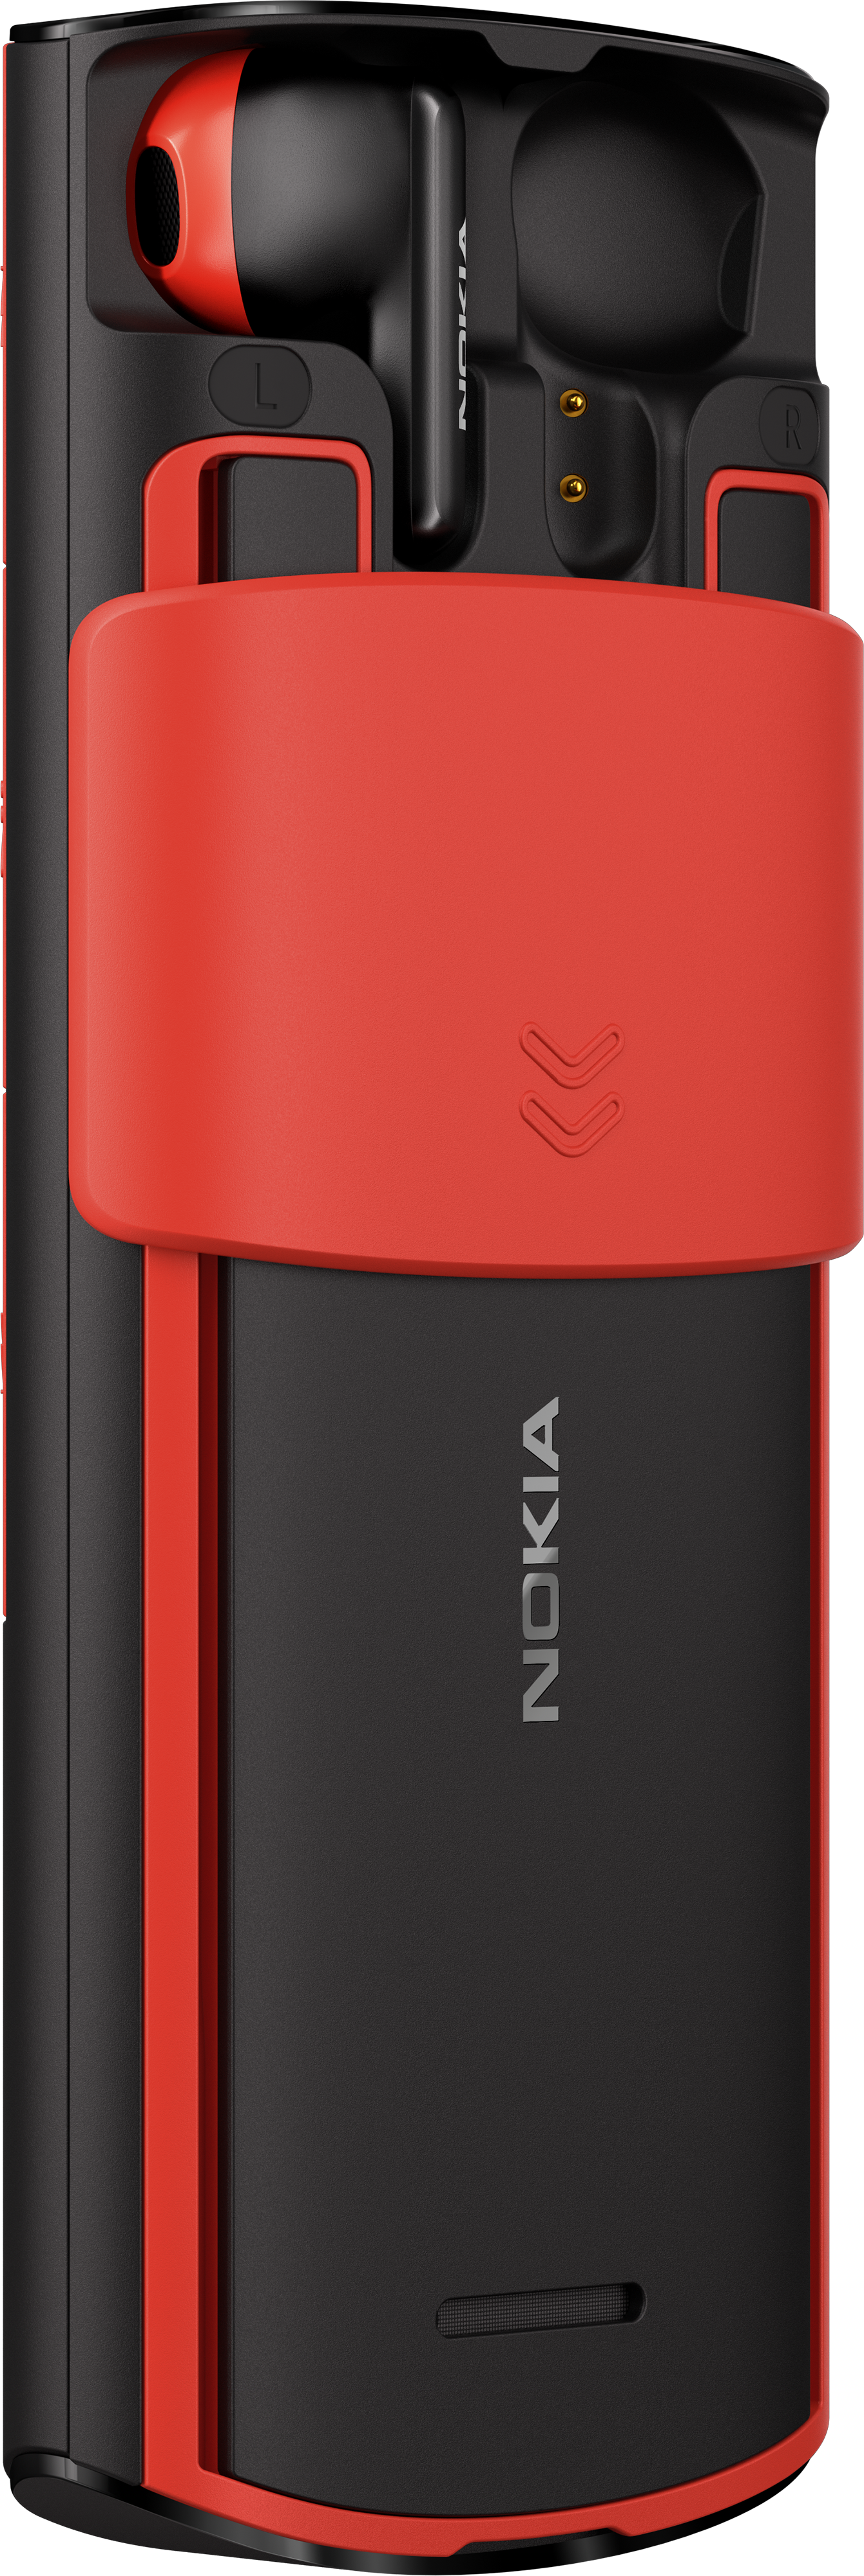 Nokia 5710. Nokia 5710 Xpress Audio купить. 5710 xpress audio